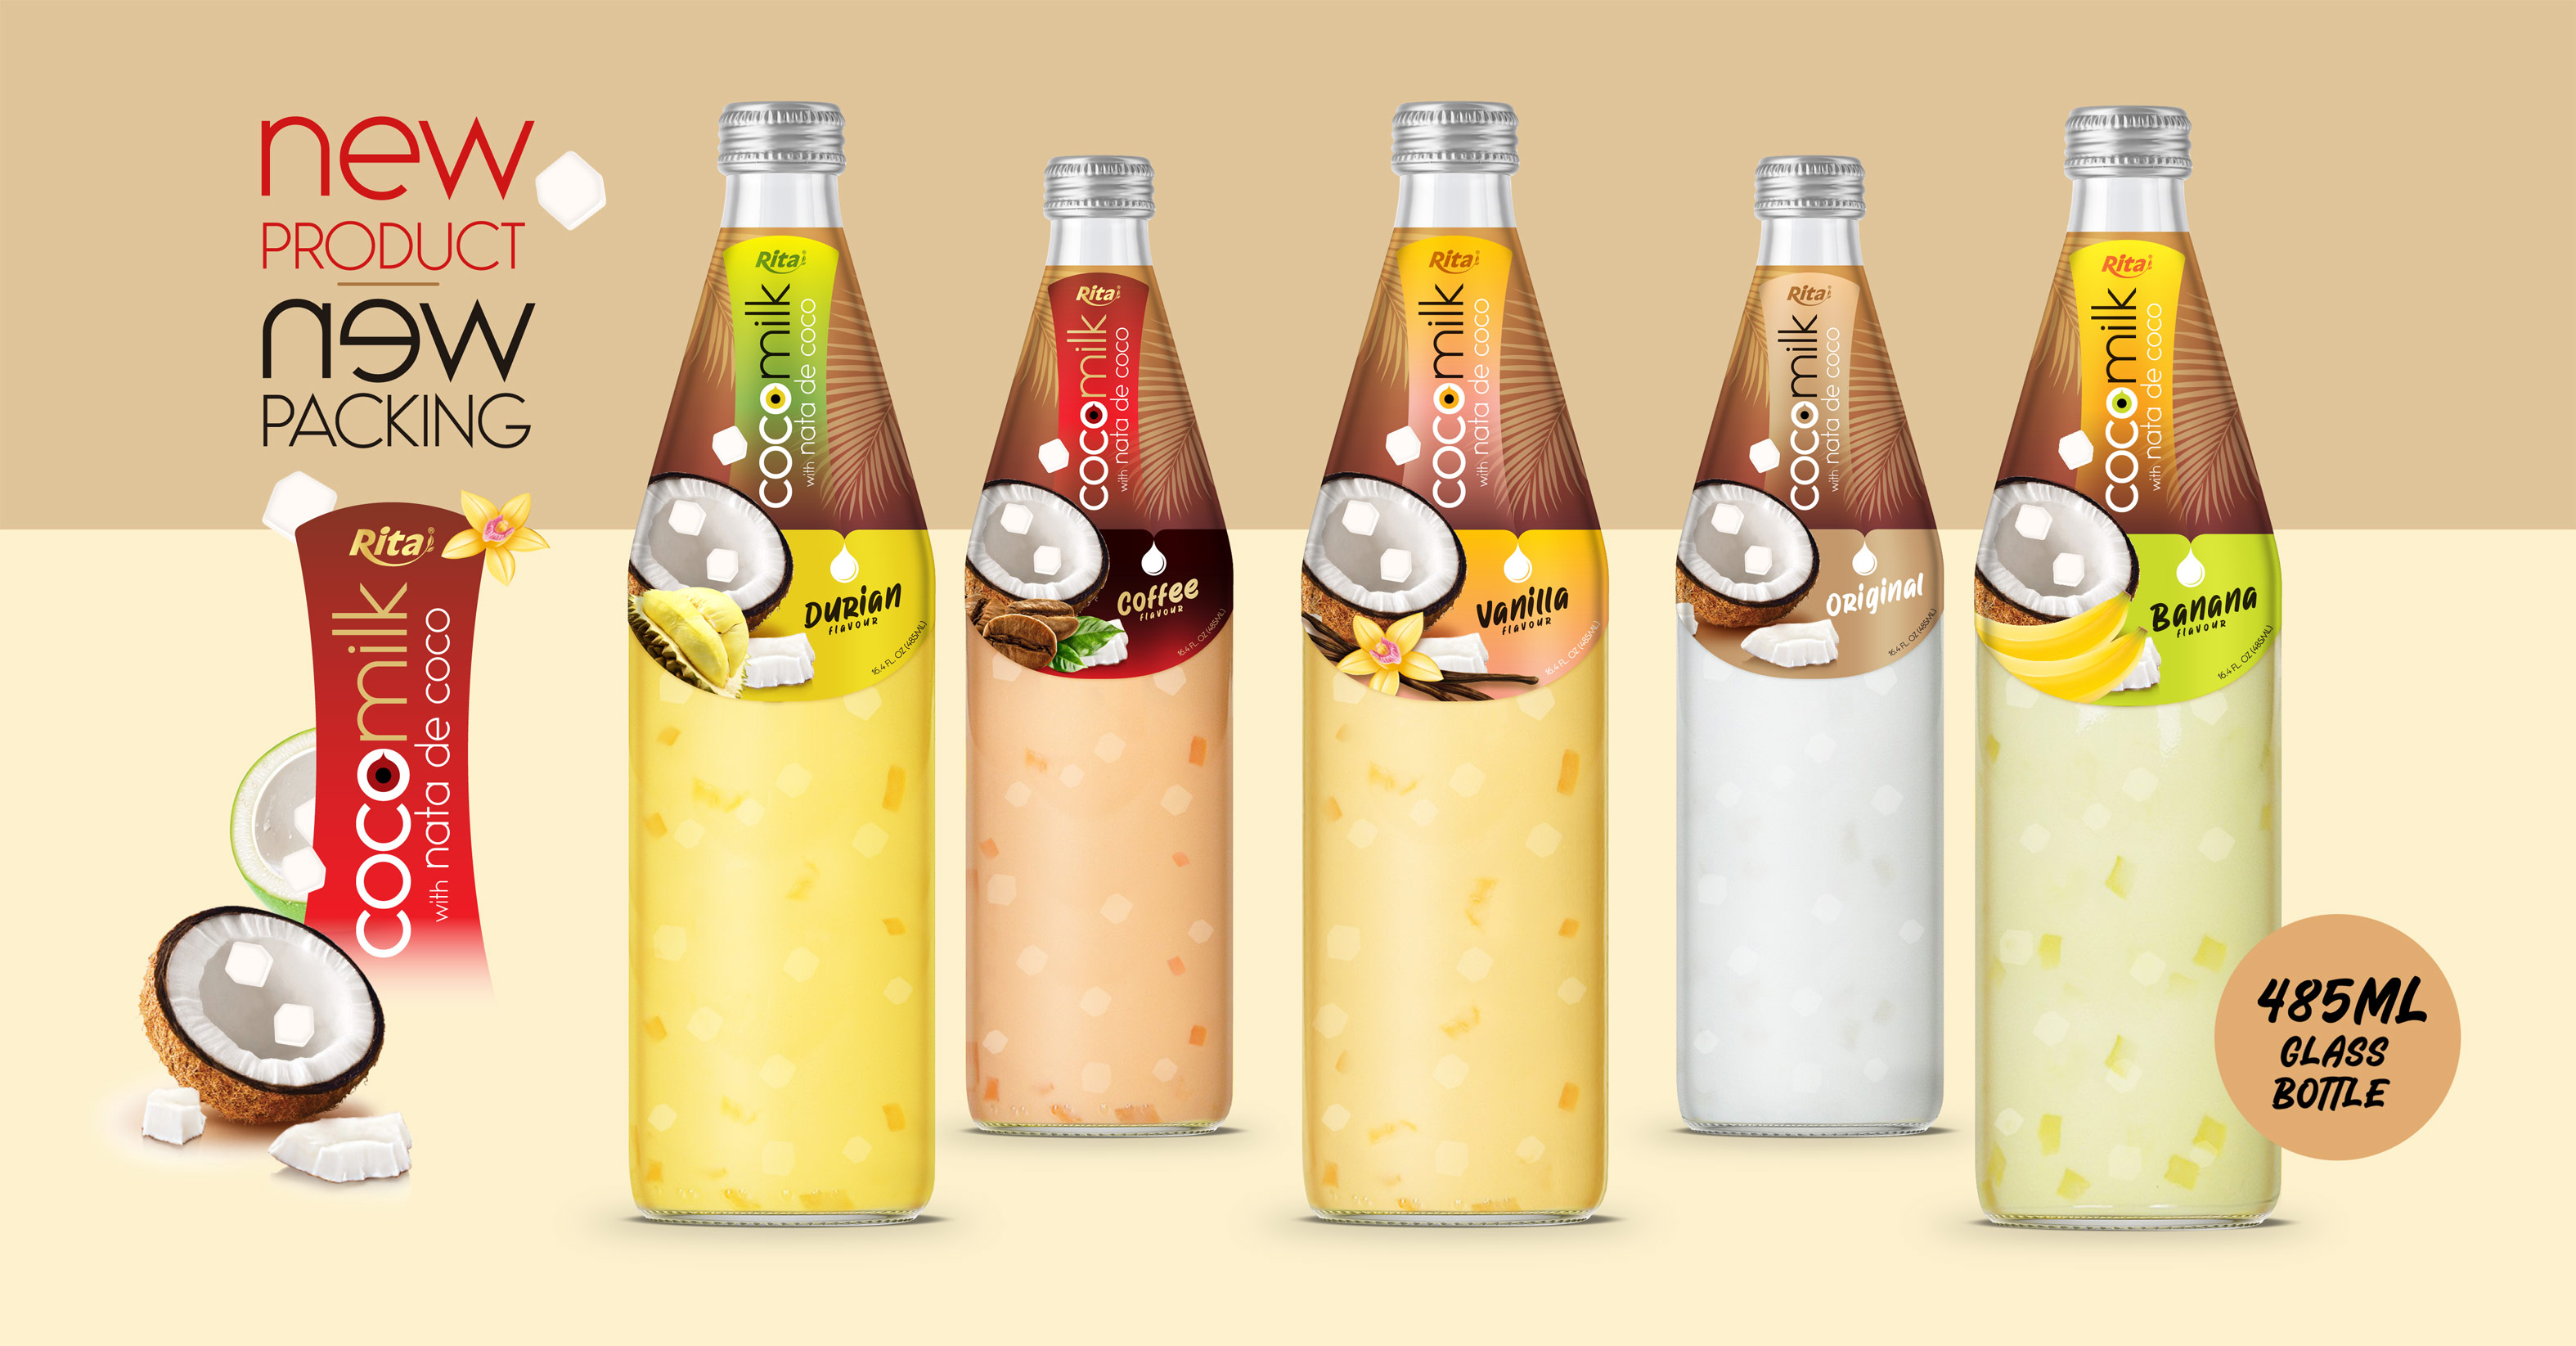 Design Coco Milk with nata de coco 485ml